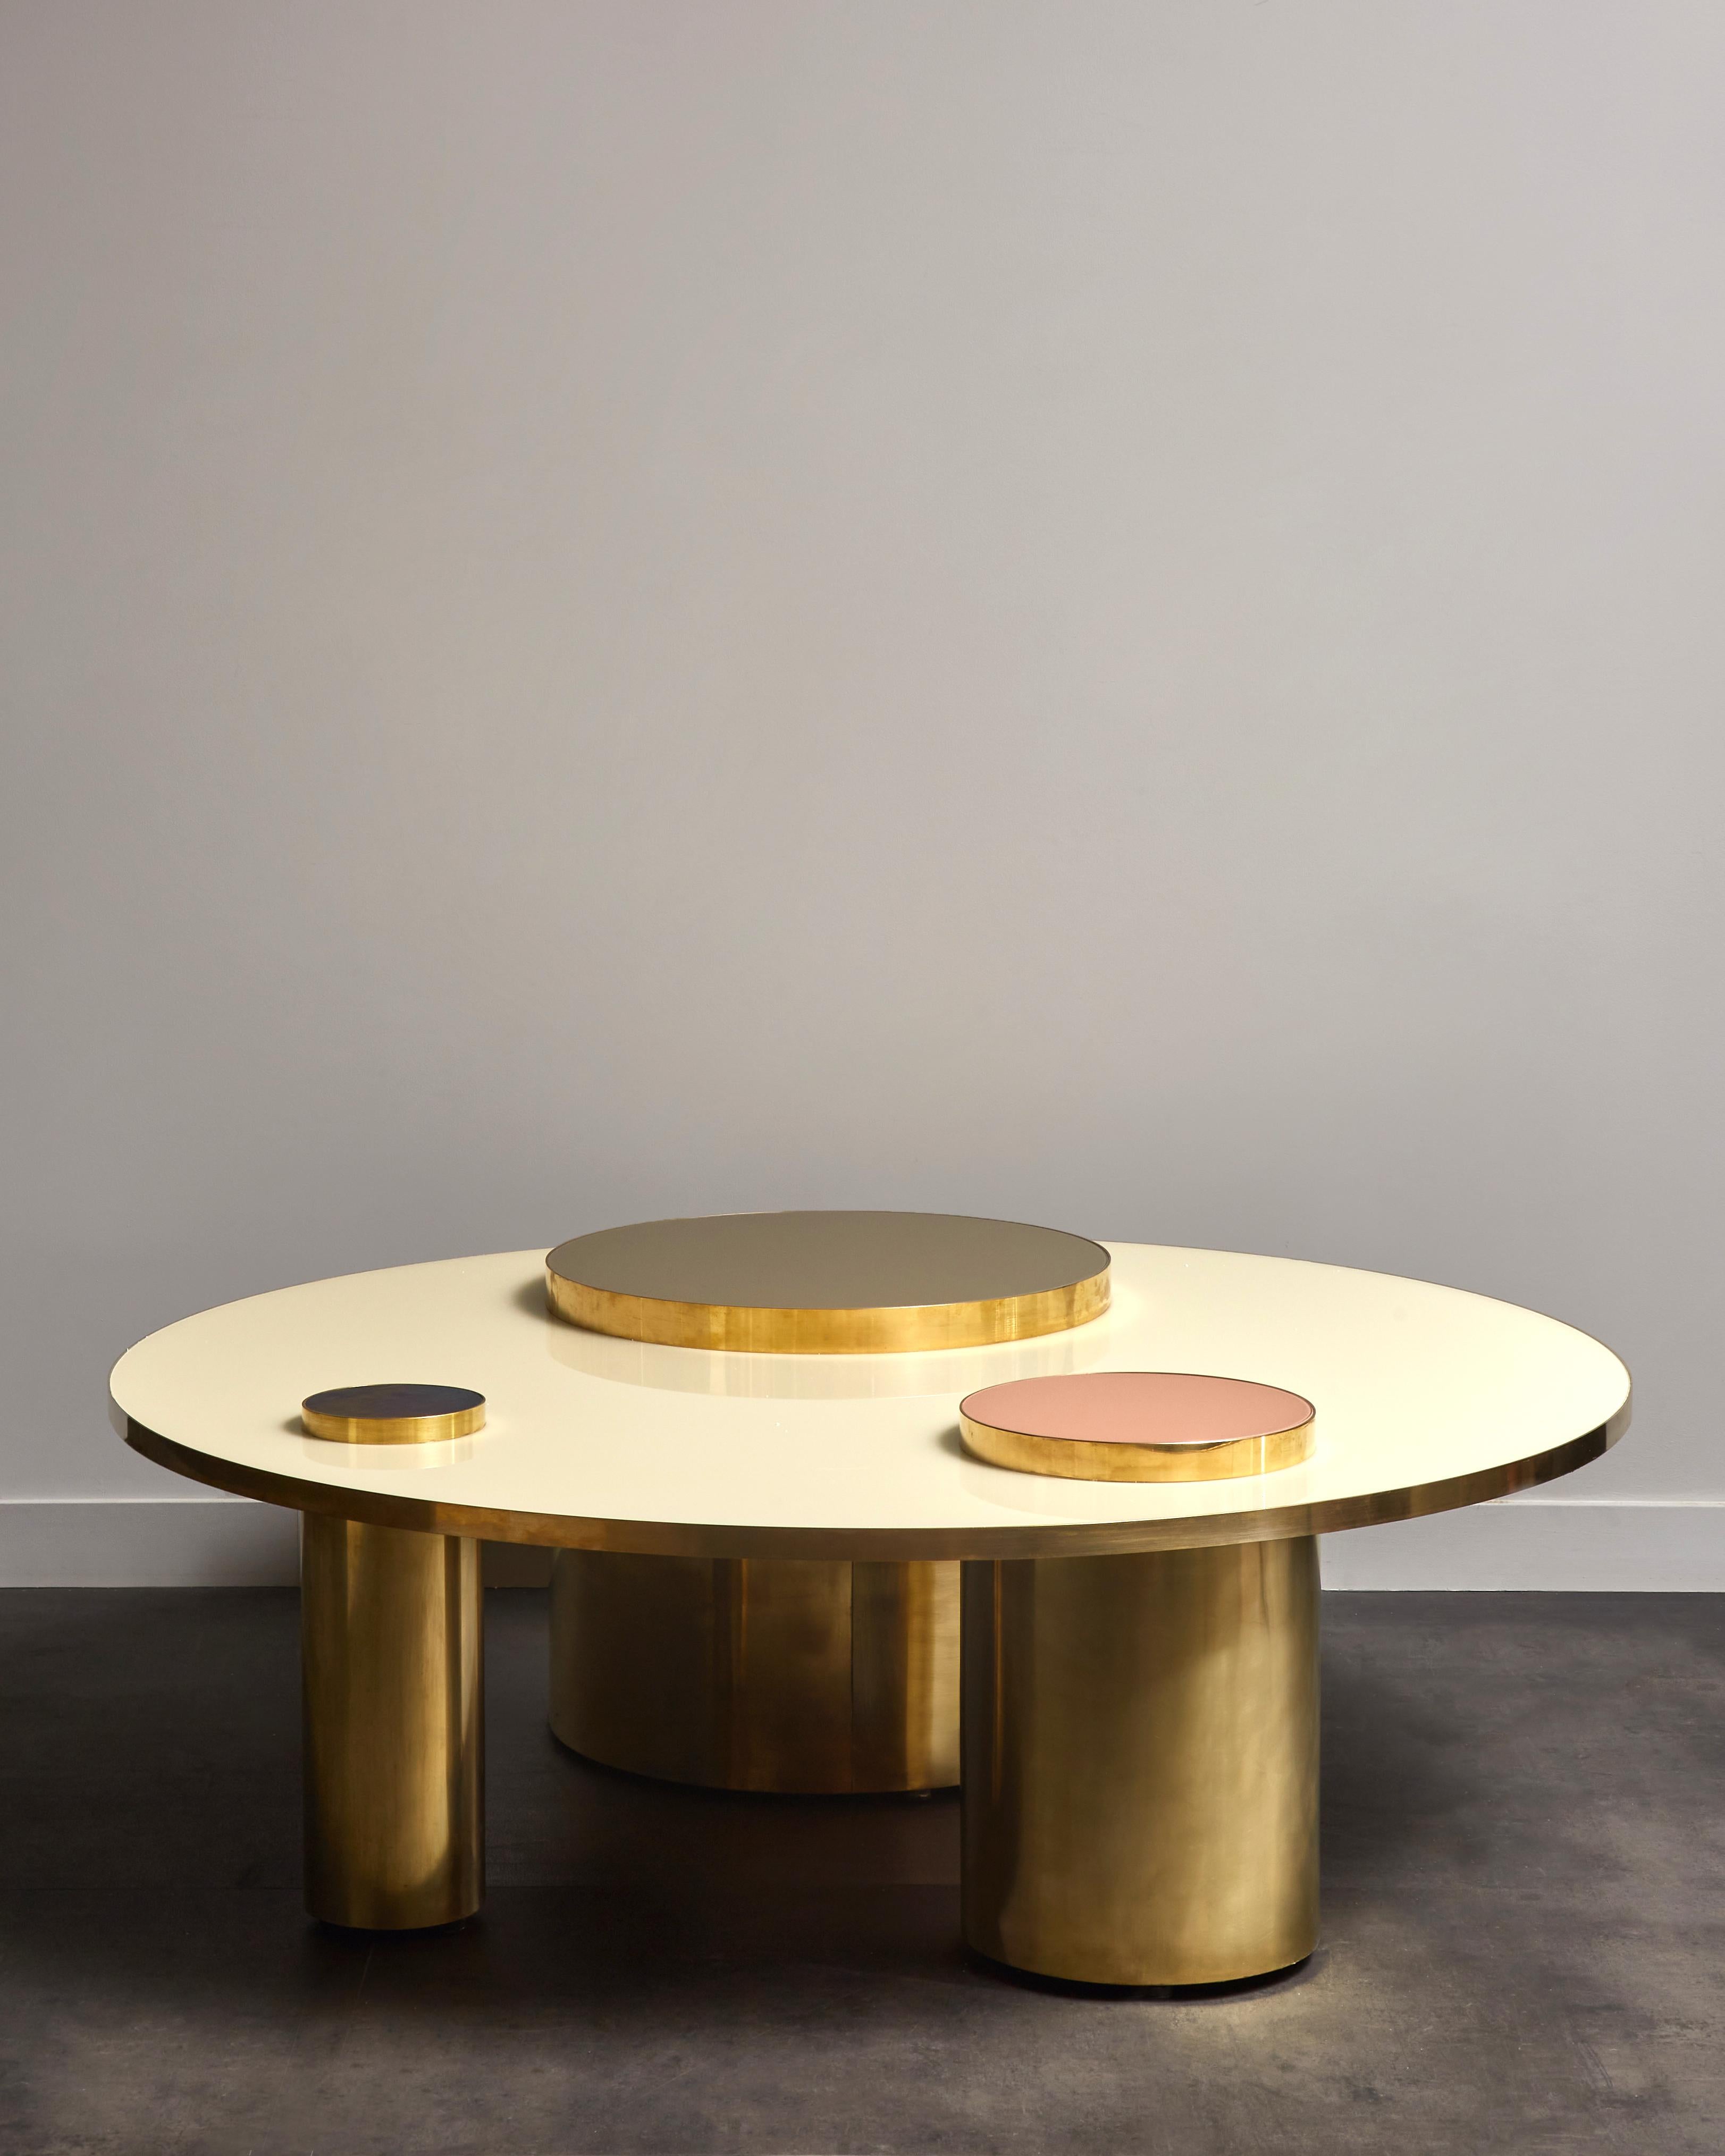 Superbe table basse en bois et laiton, avec miroirs teintés.
Création par le Studio Glustin.
France, 2022.